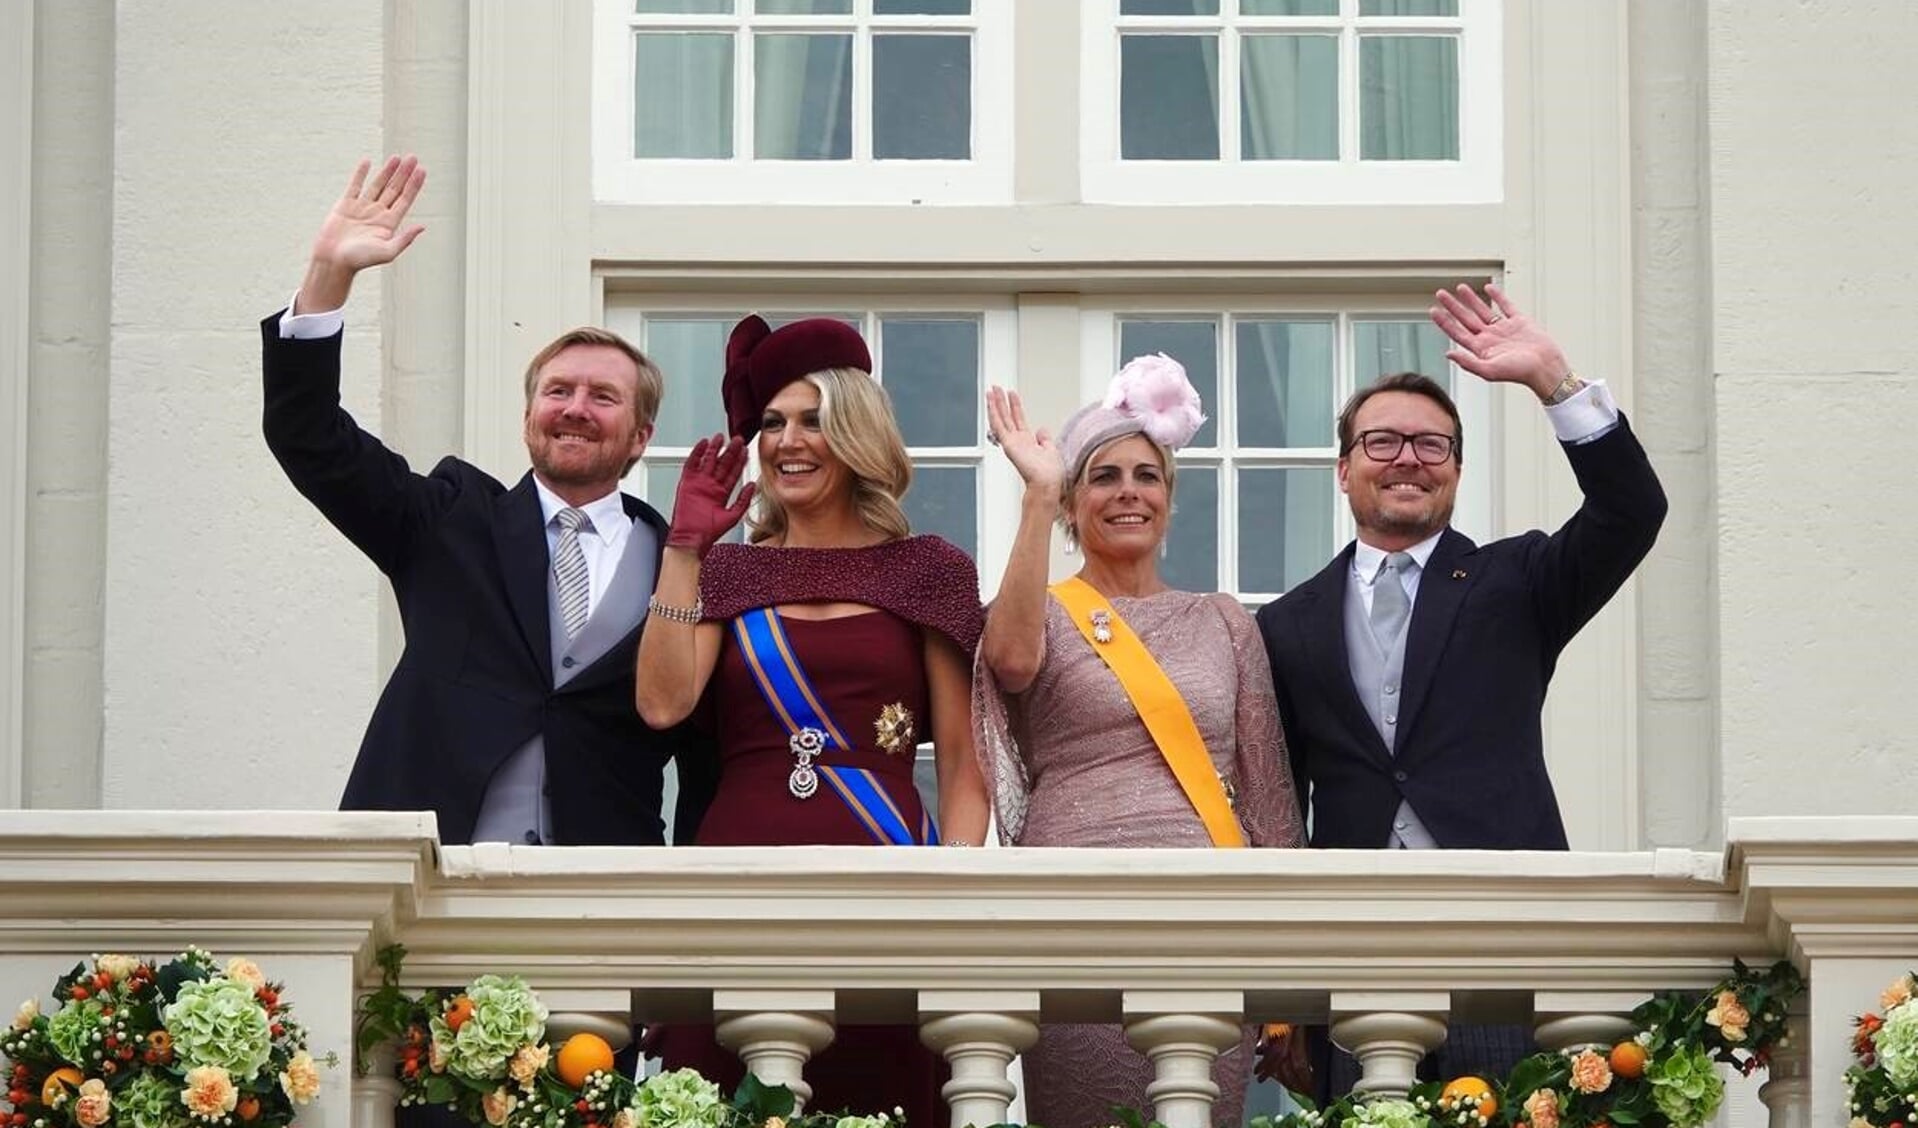  Koning Willem-Alexander, Koningin Máxima, Prinses Laurentien en Prins Constantijn op het balkon van Paleis Noordeinde tijdens Prinsjesdag